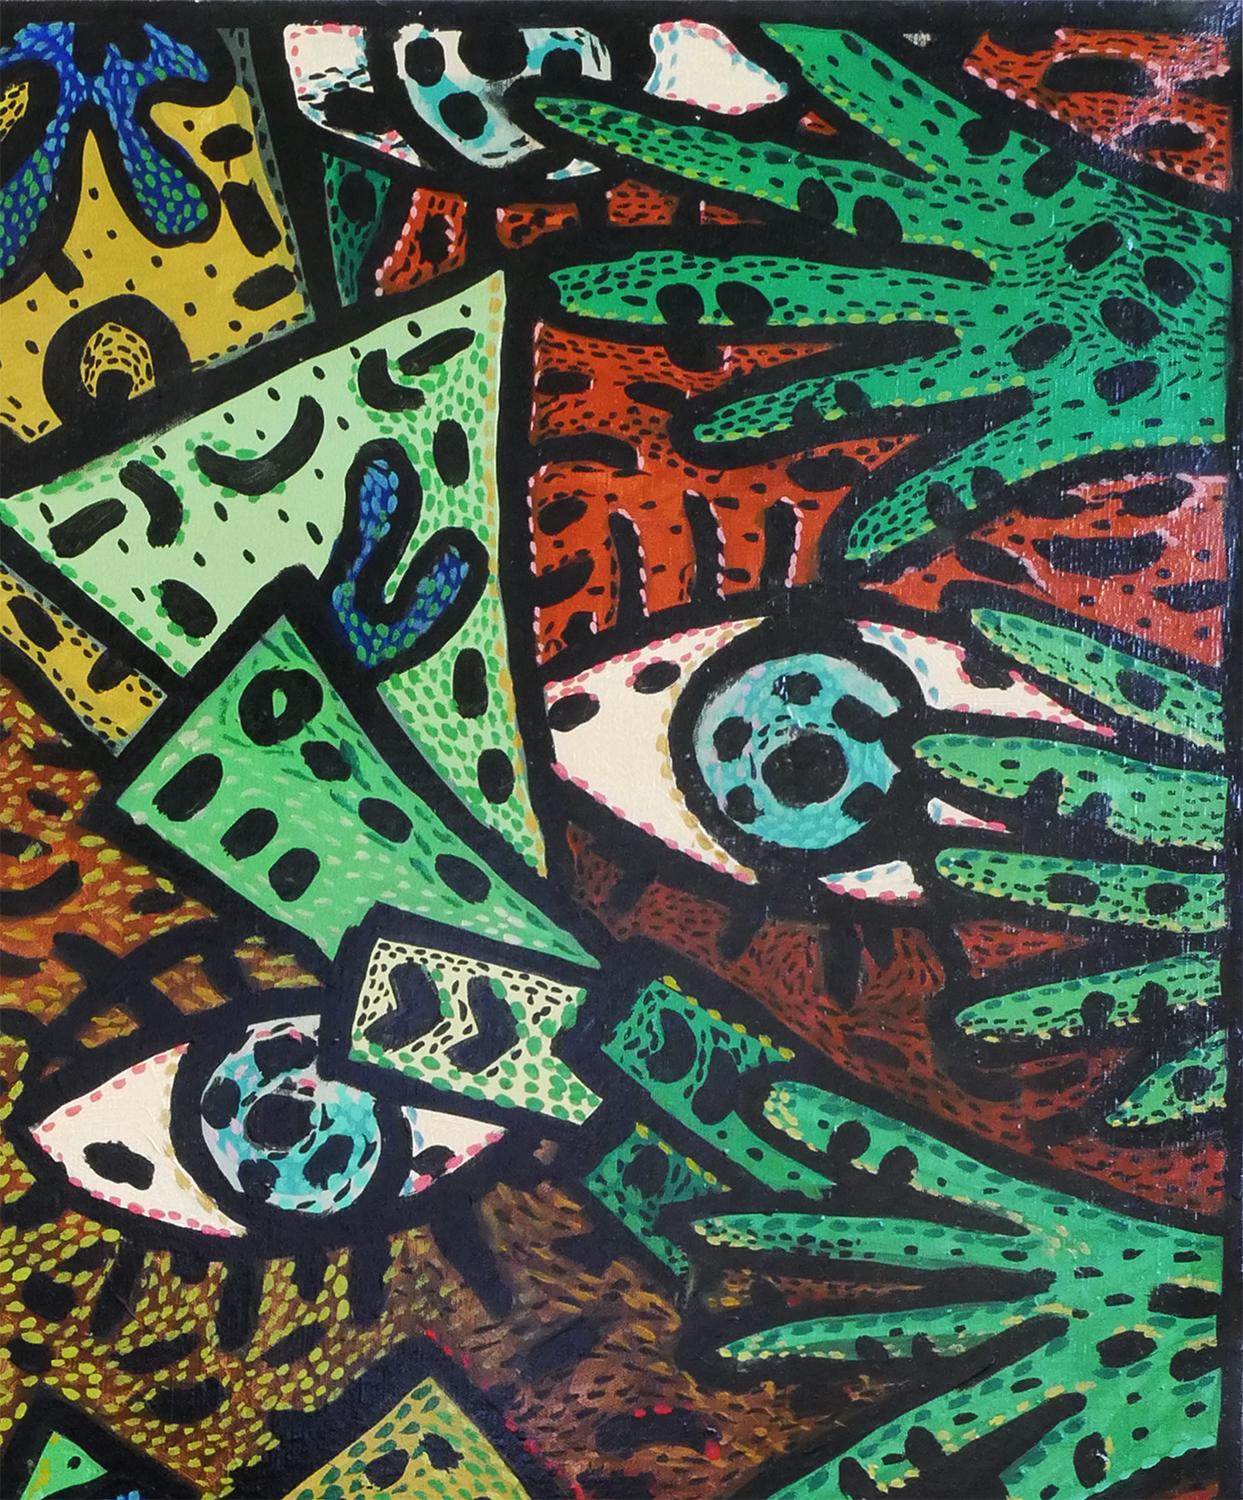 Zeitgenössisches abstraktes Gemälde in Grün, Blau und Gelb, „Addicted to Geld“ (Abstrakt), Art, von Richard Fluhr